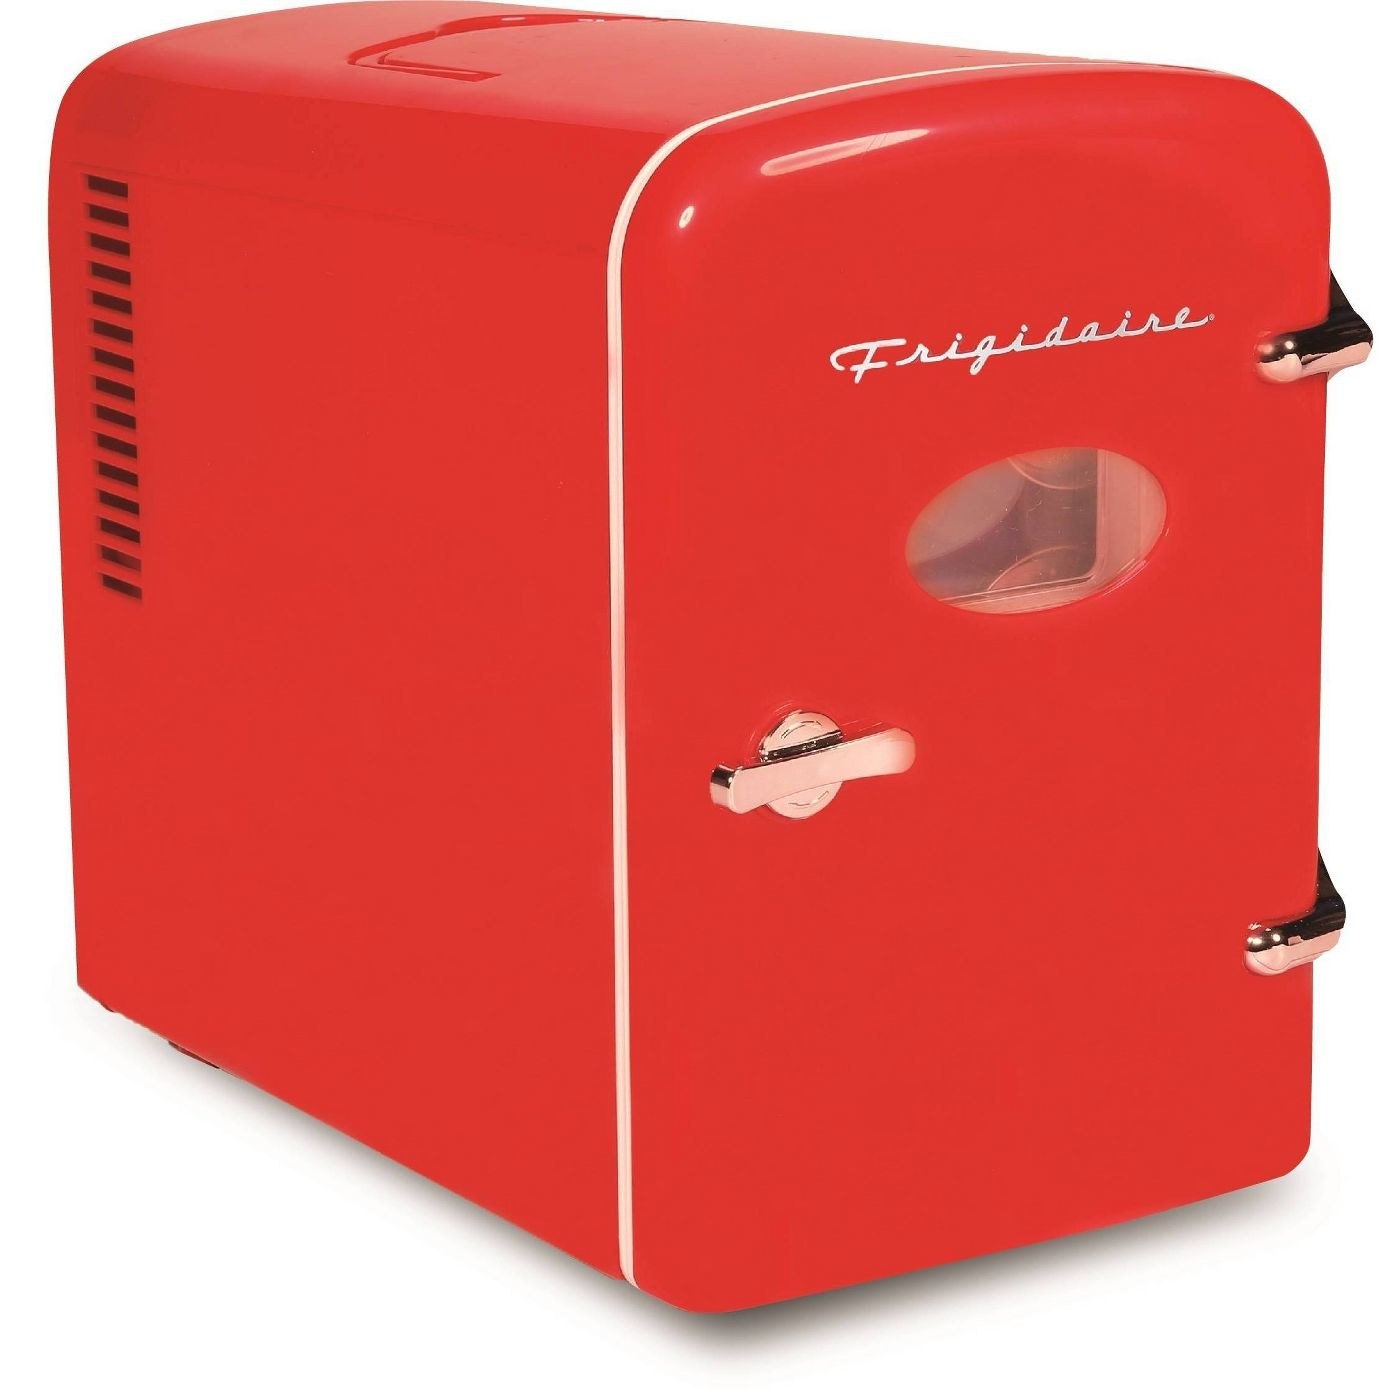 The retro mini fridge in red